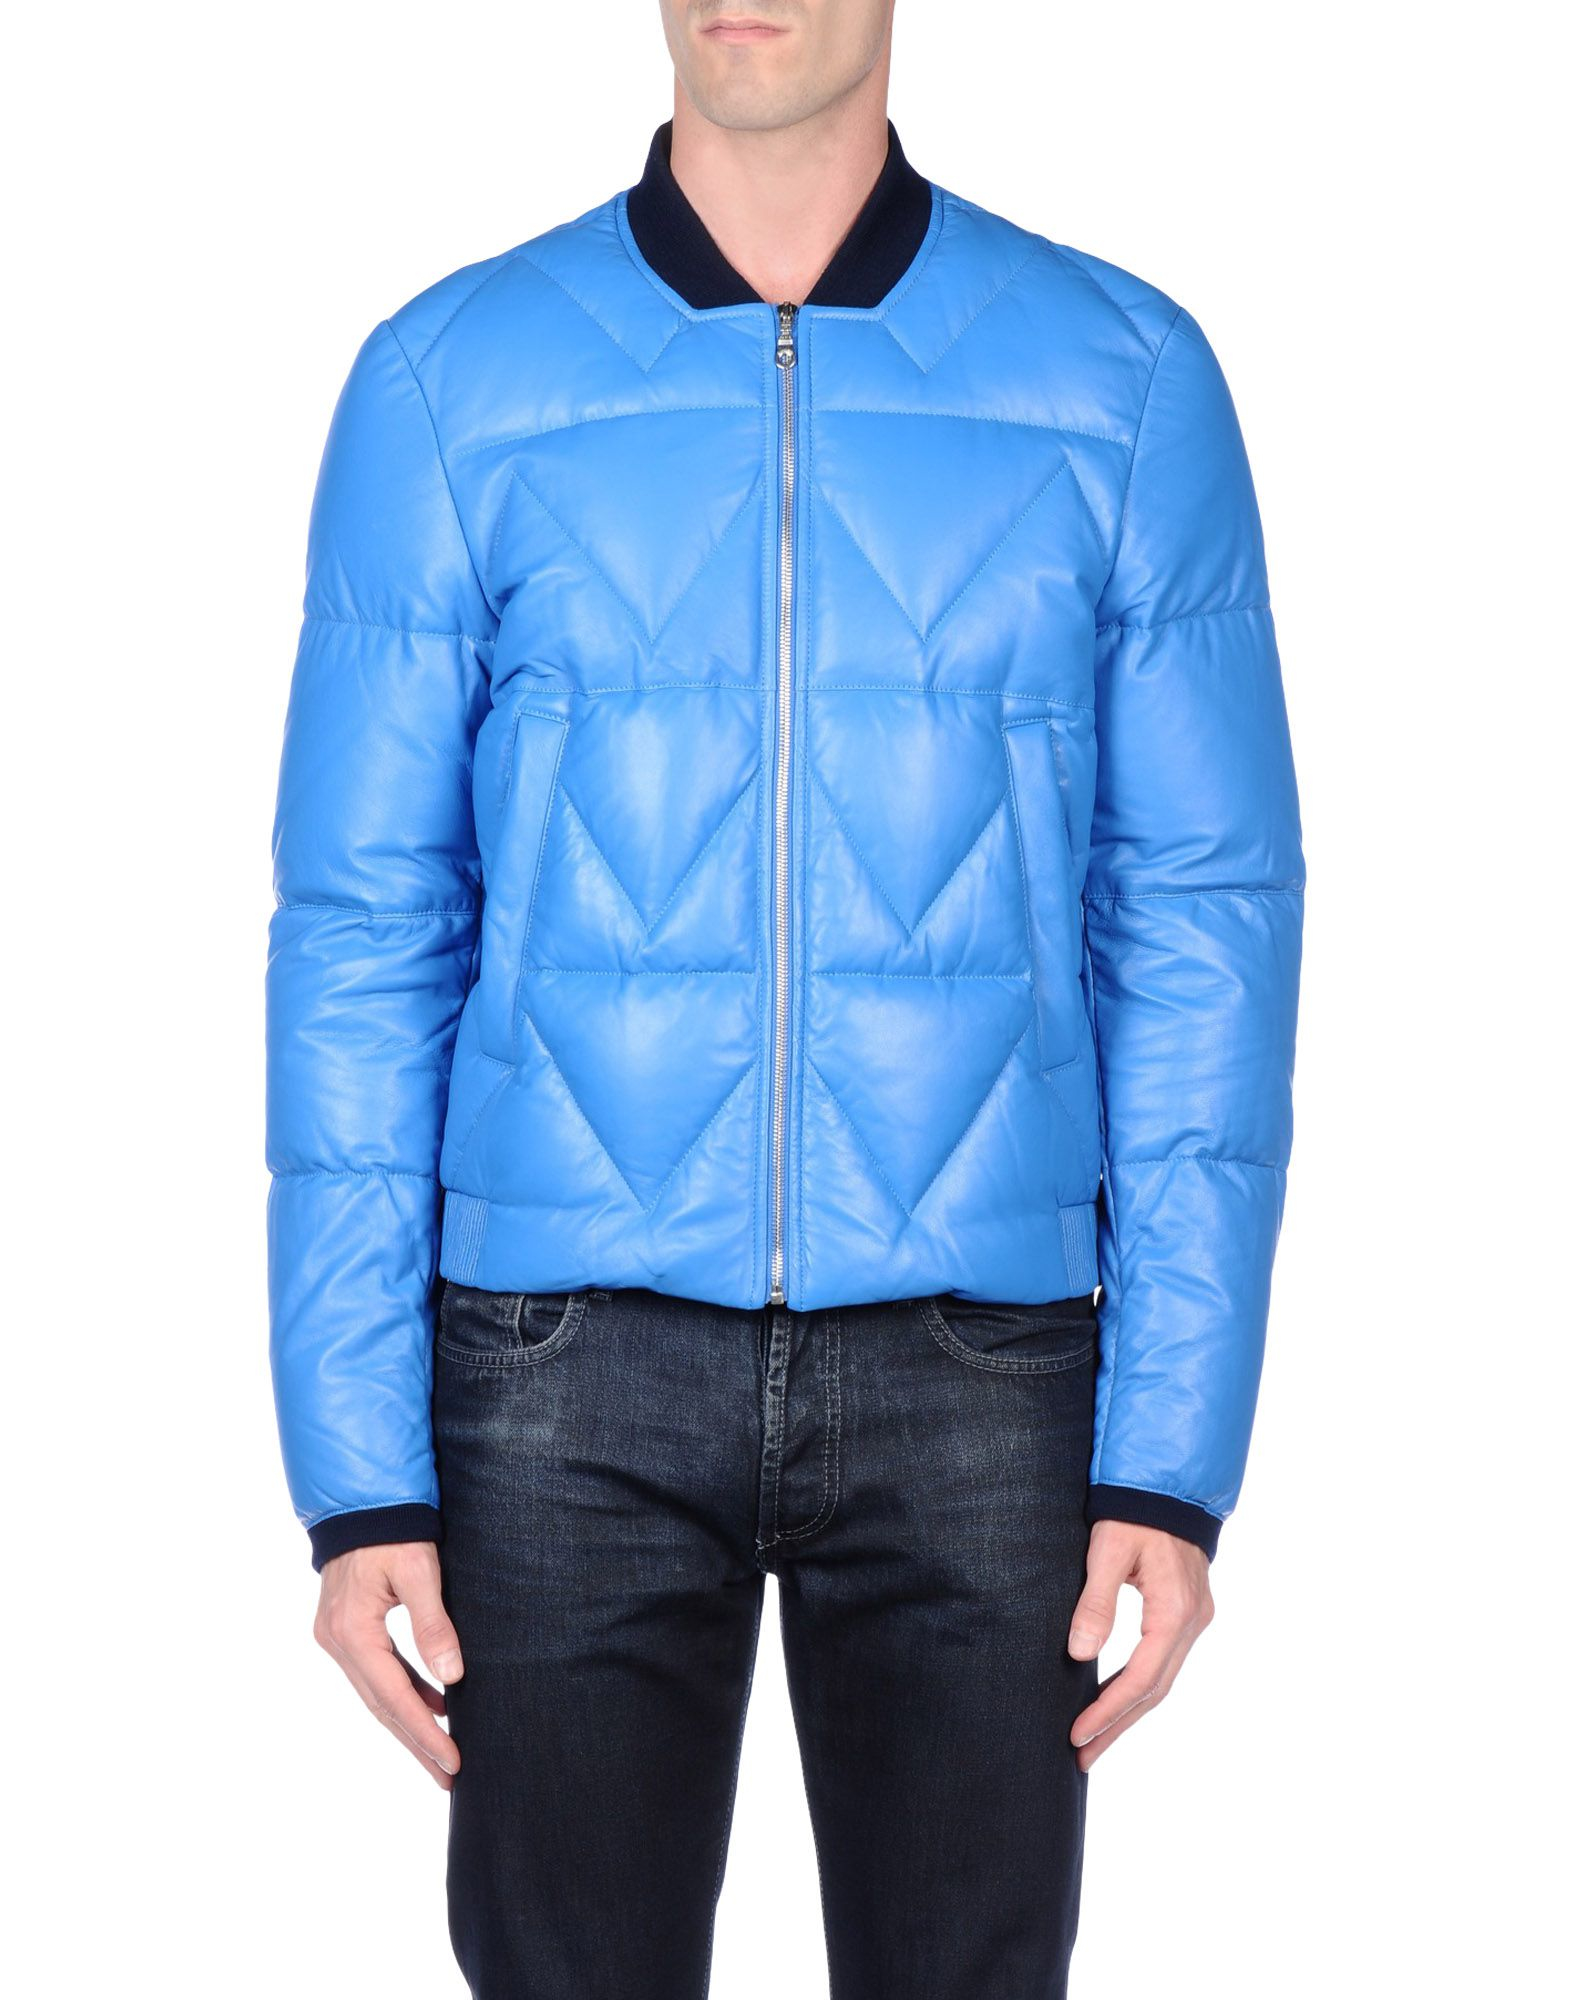 Lyst - Kenzo Jacket in Blue for Men